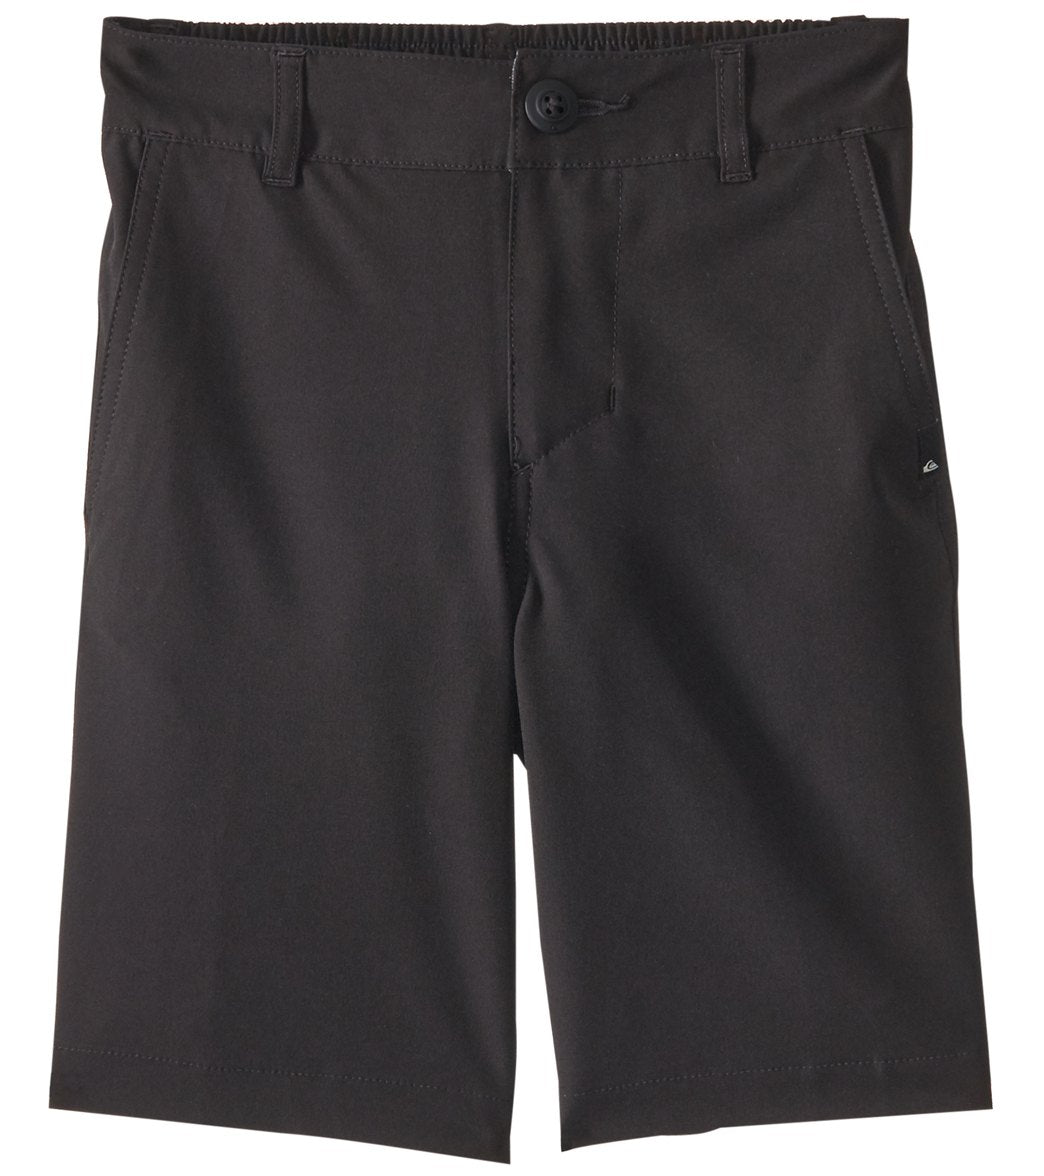 Quiksilver Boys' Union Amphibian Shorts - Black 3 3T Polyester/Spandex - Swimoutlet.com